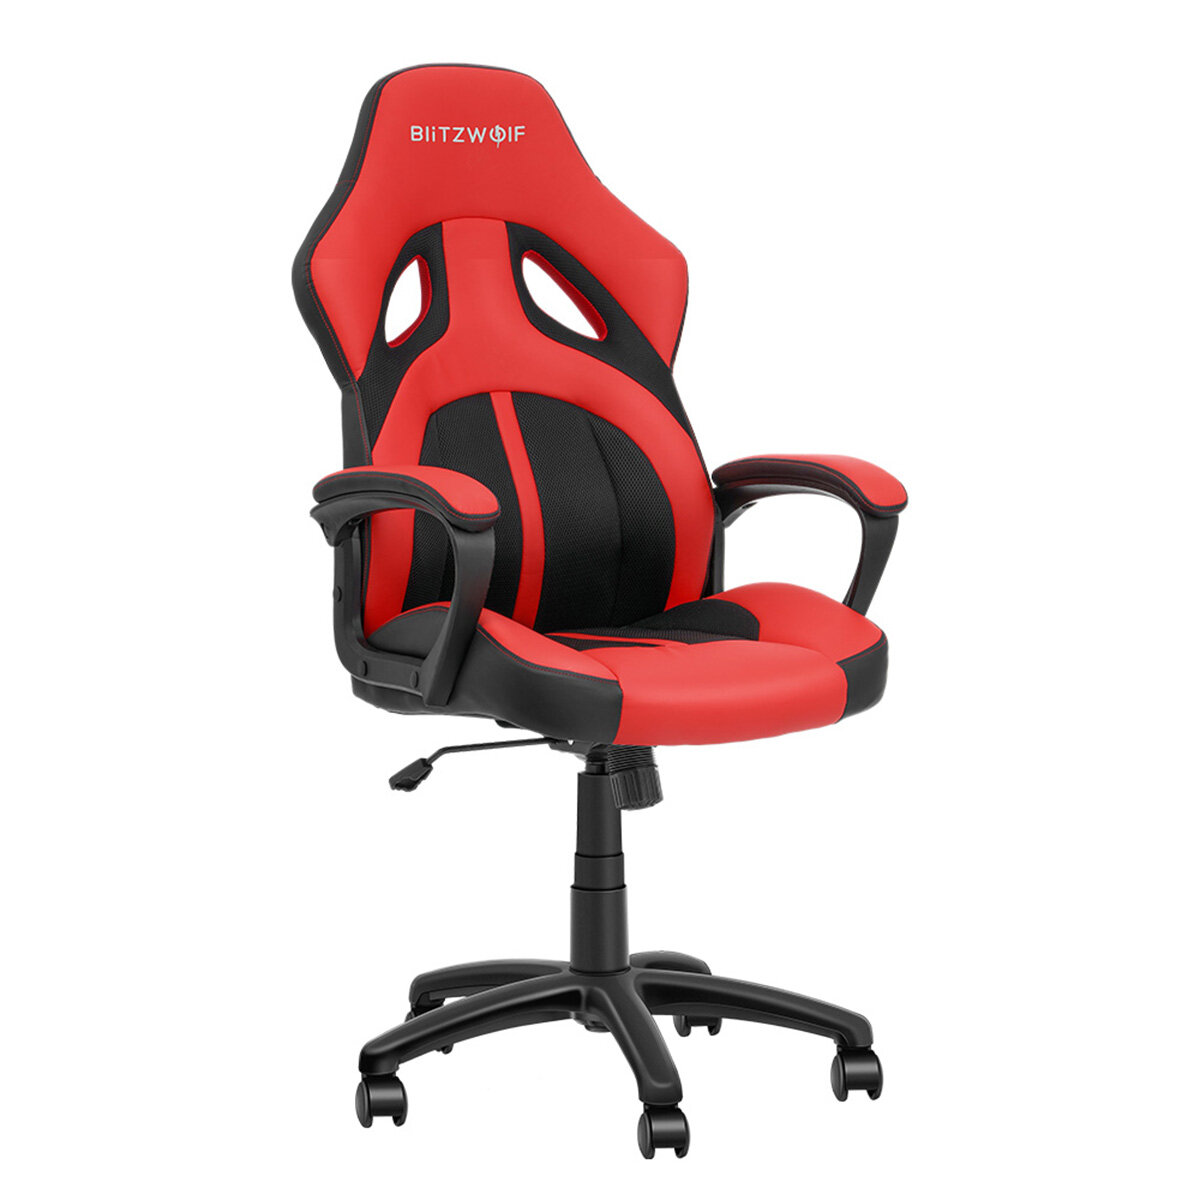 Στα 78.55 € από αποθήκη Τσεχίας | BlitzWolf® BW-GC3 Racing Style Gaming Chair PU + Mesh Material Streamlined Design Adjustable Height Widened Seat Home Office